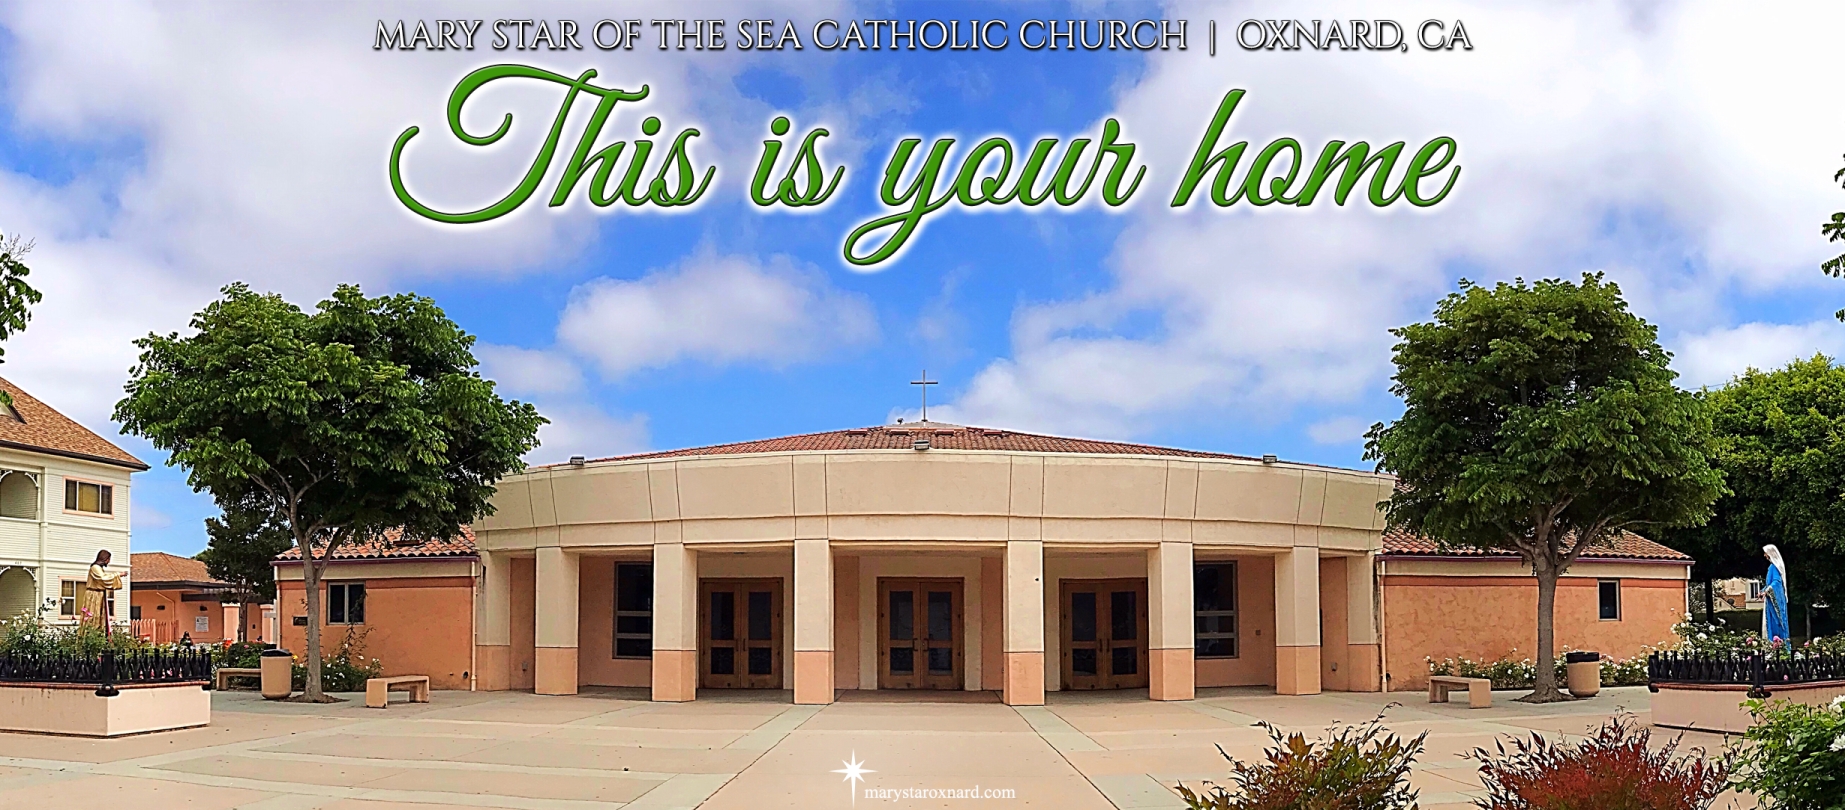 MARY, STAR OF THE SEA – CATHOLIC CHURCH | OXNARD, CA